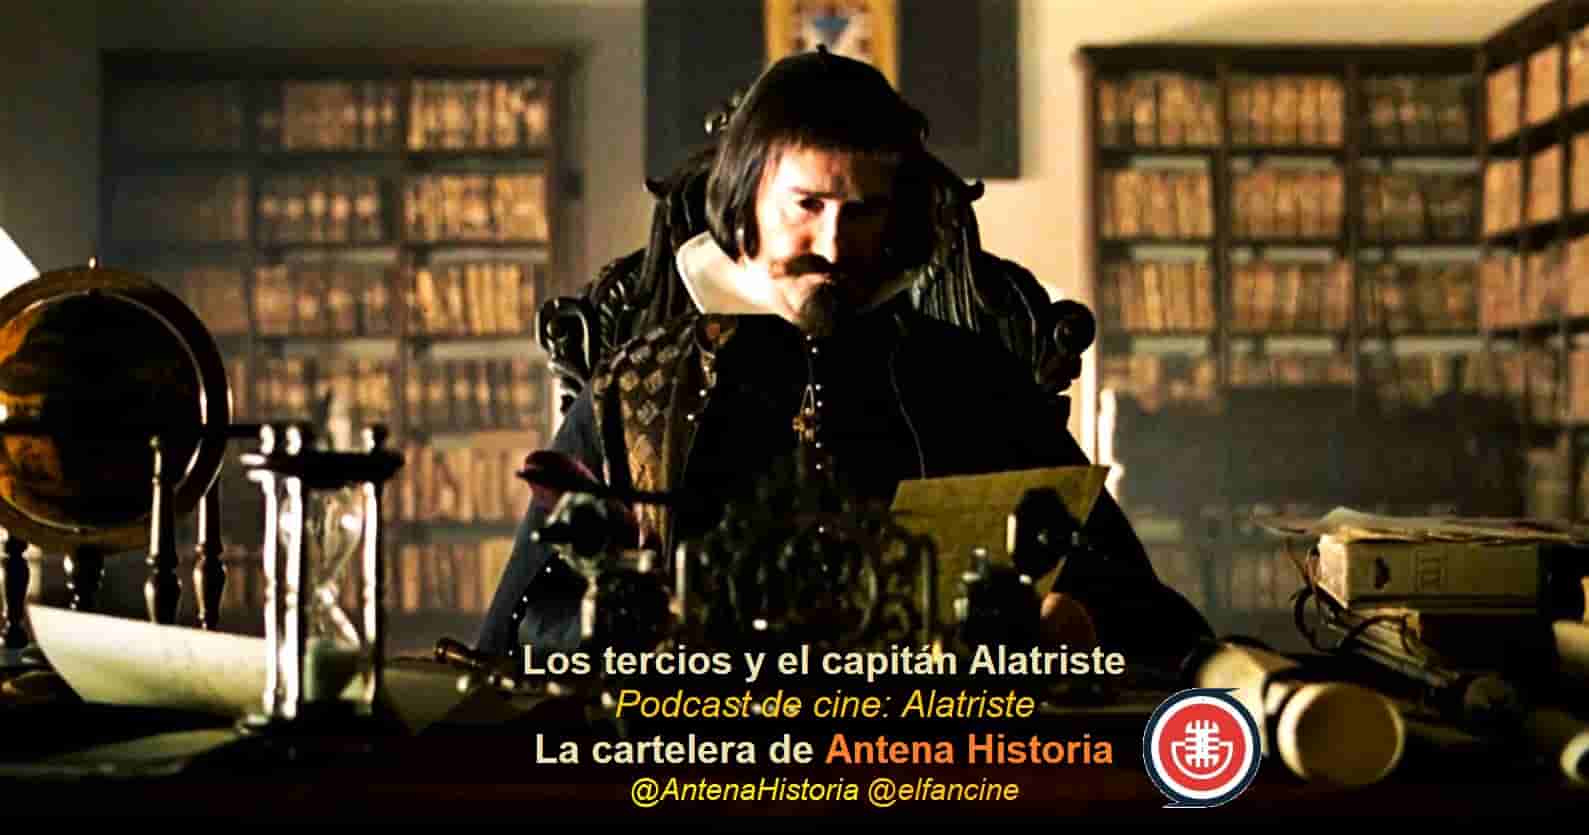 Los tercios y el capitán Alatriste - Alatriste - Cierra España - Hijos de Santiago - Podcas de cine - Antena Historia - Web de cine - el fancine - Alvaro Garcia